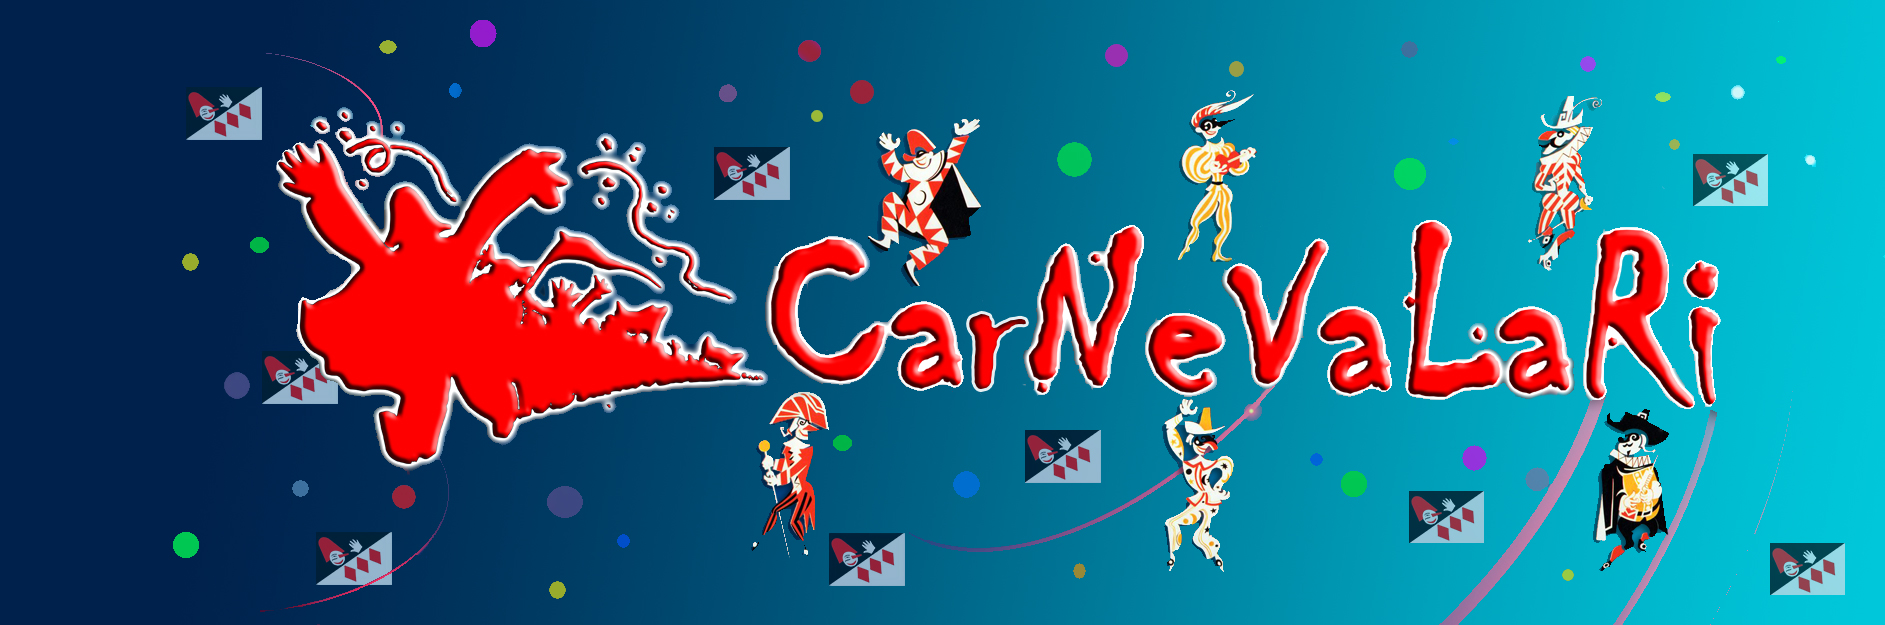 Coppa Carnevale: risultati del 2 febbraio